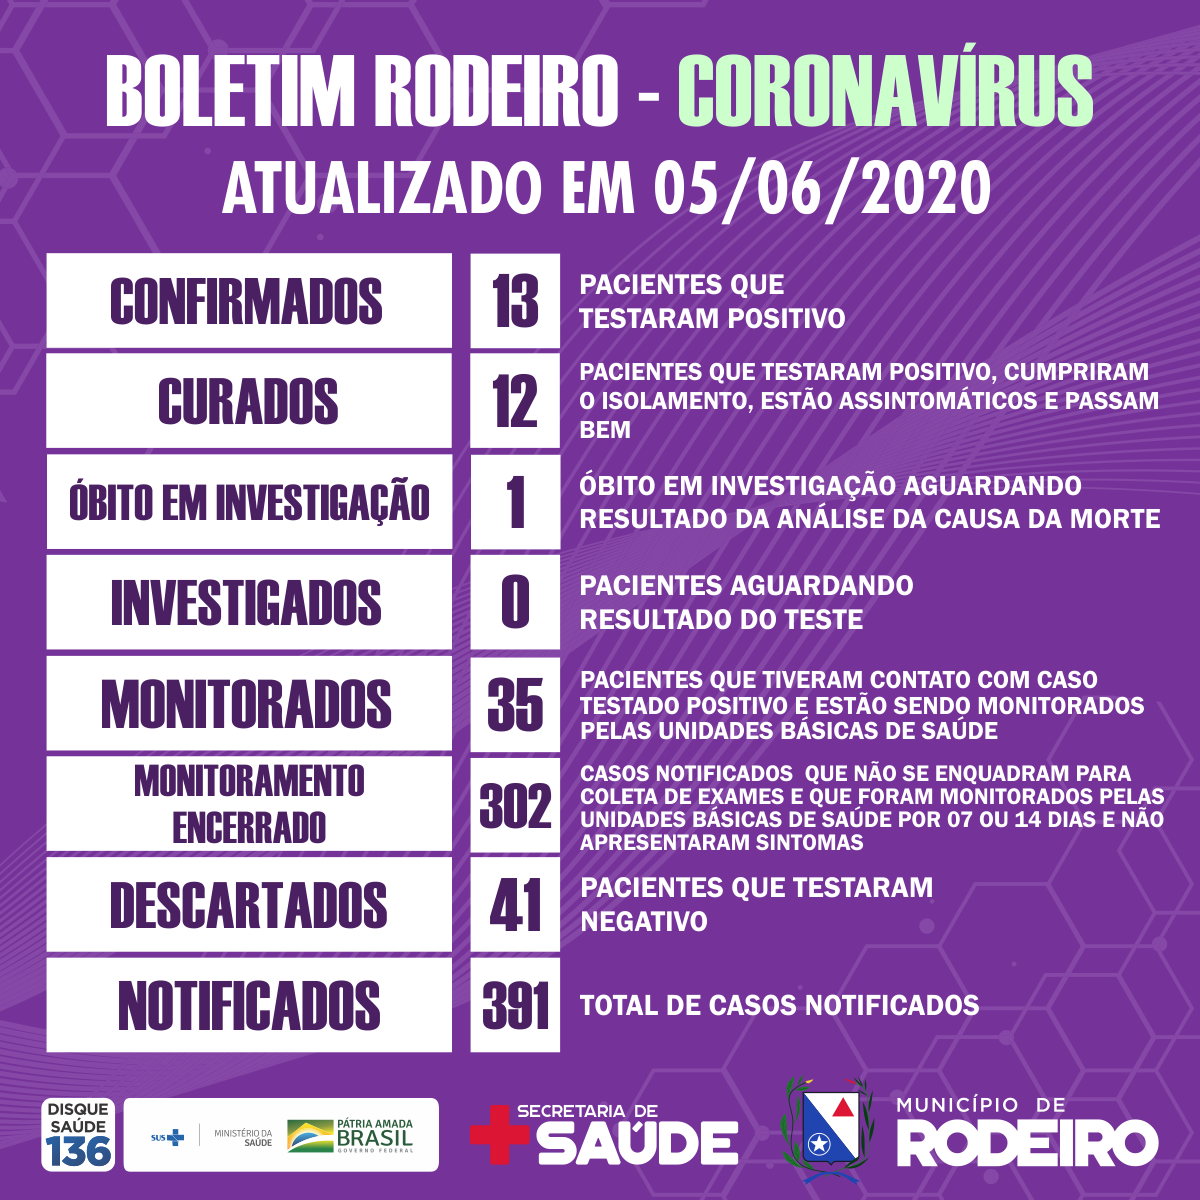 Boletim epidemiológico do Município de Rodeiro coronavírus, atualizado em 05/06/2020